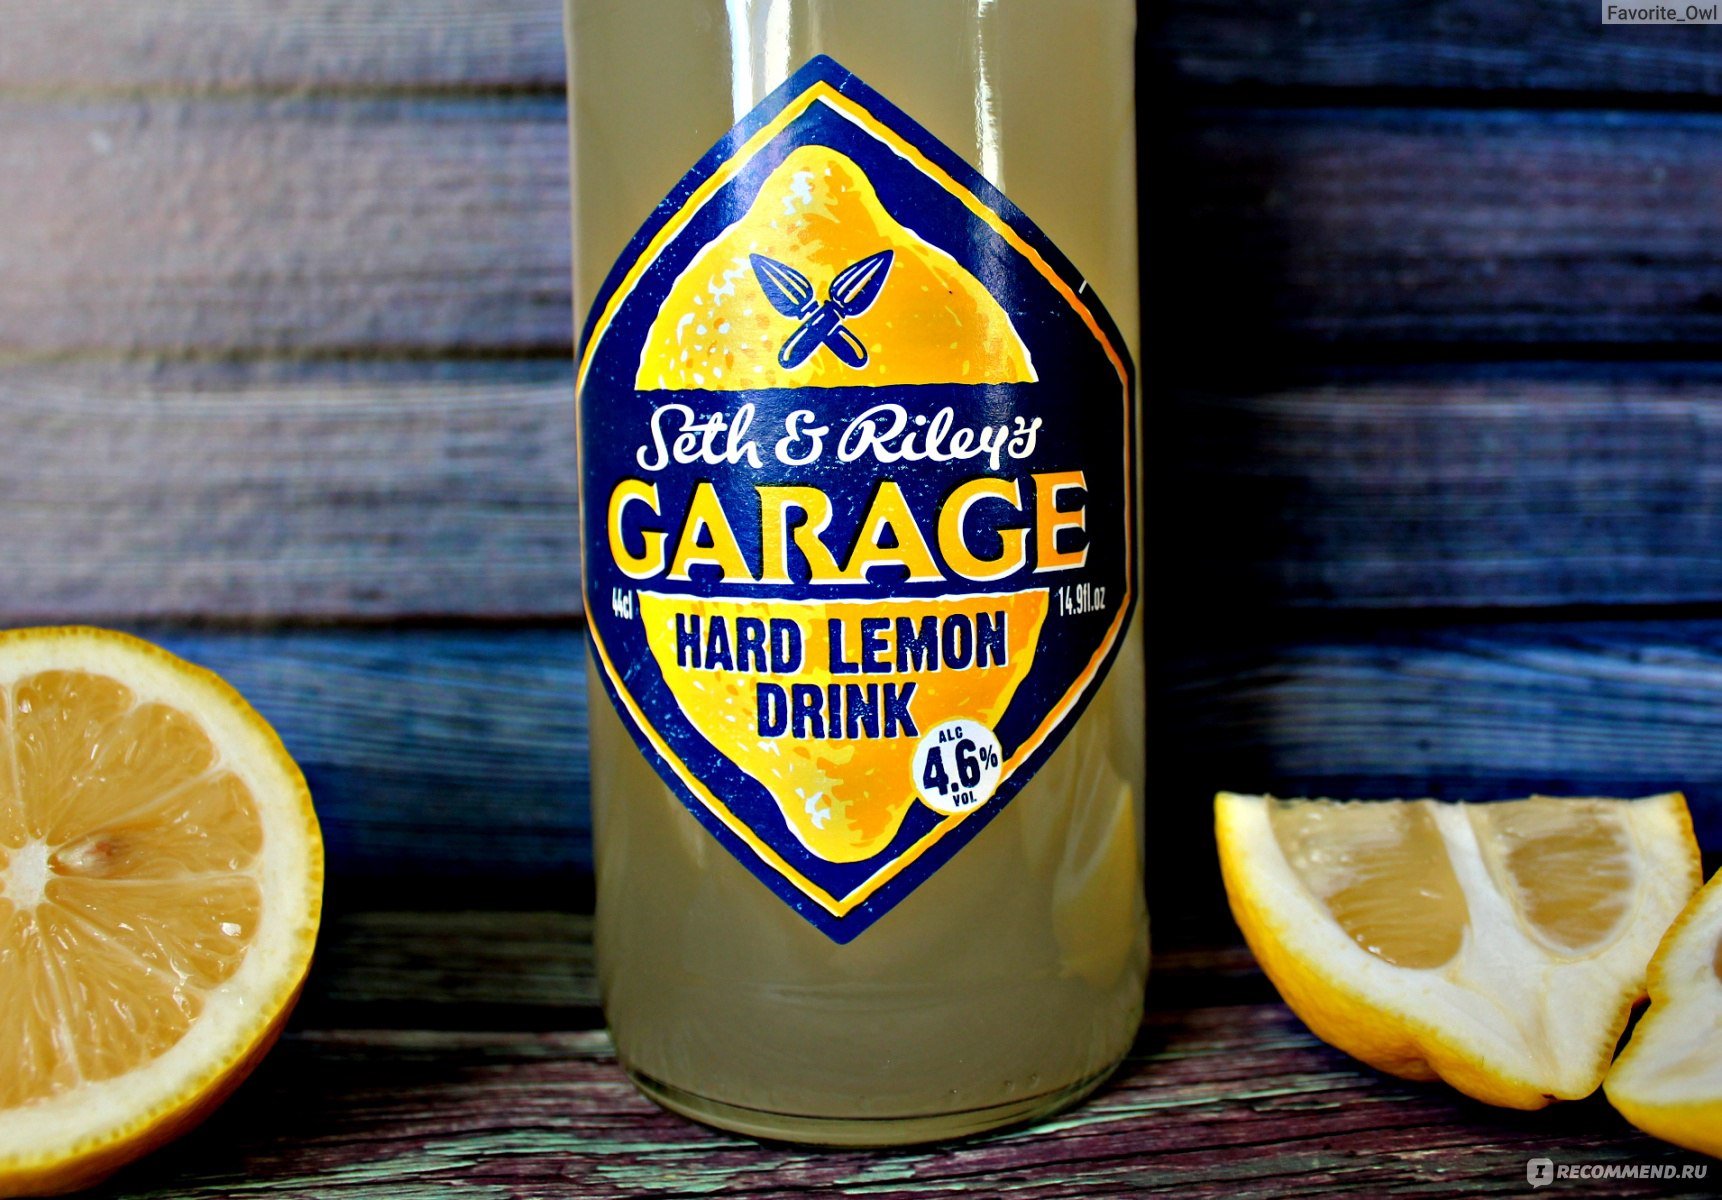 Пиво гараж все вкусы фото. Пиво Garage Lemon. Лимонный пивной напиток Garage. Garage Seth and Rileys. Seth & Riley’s Garage hard Lemon.